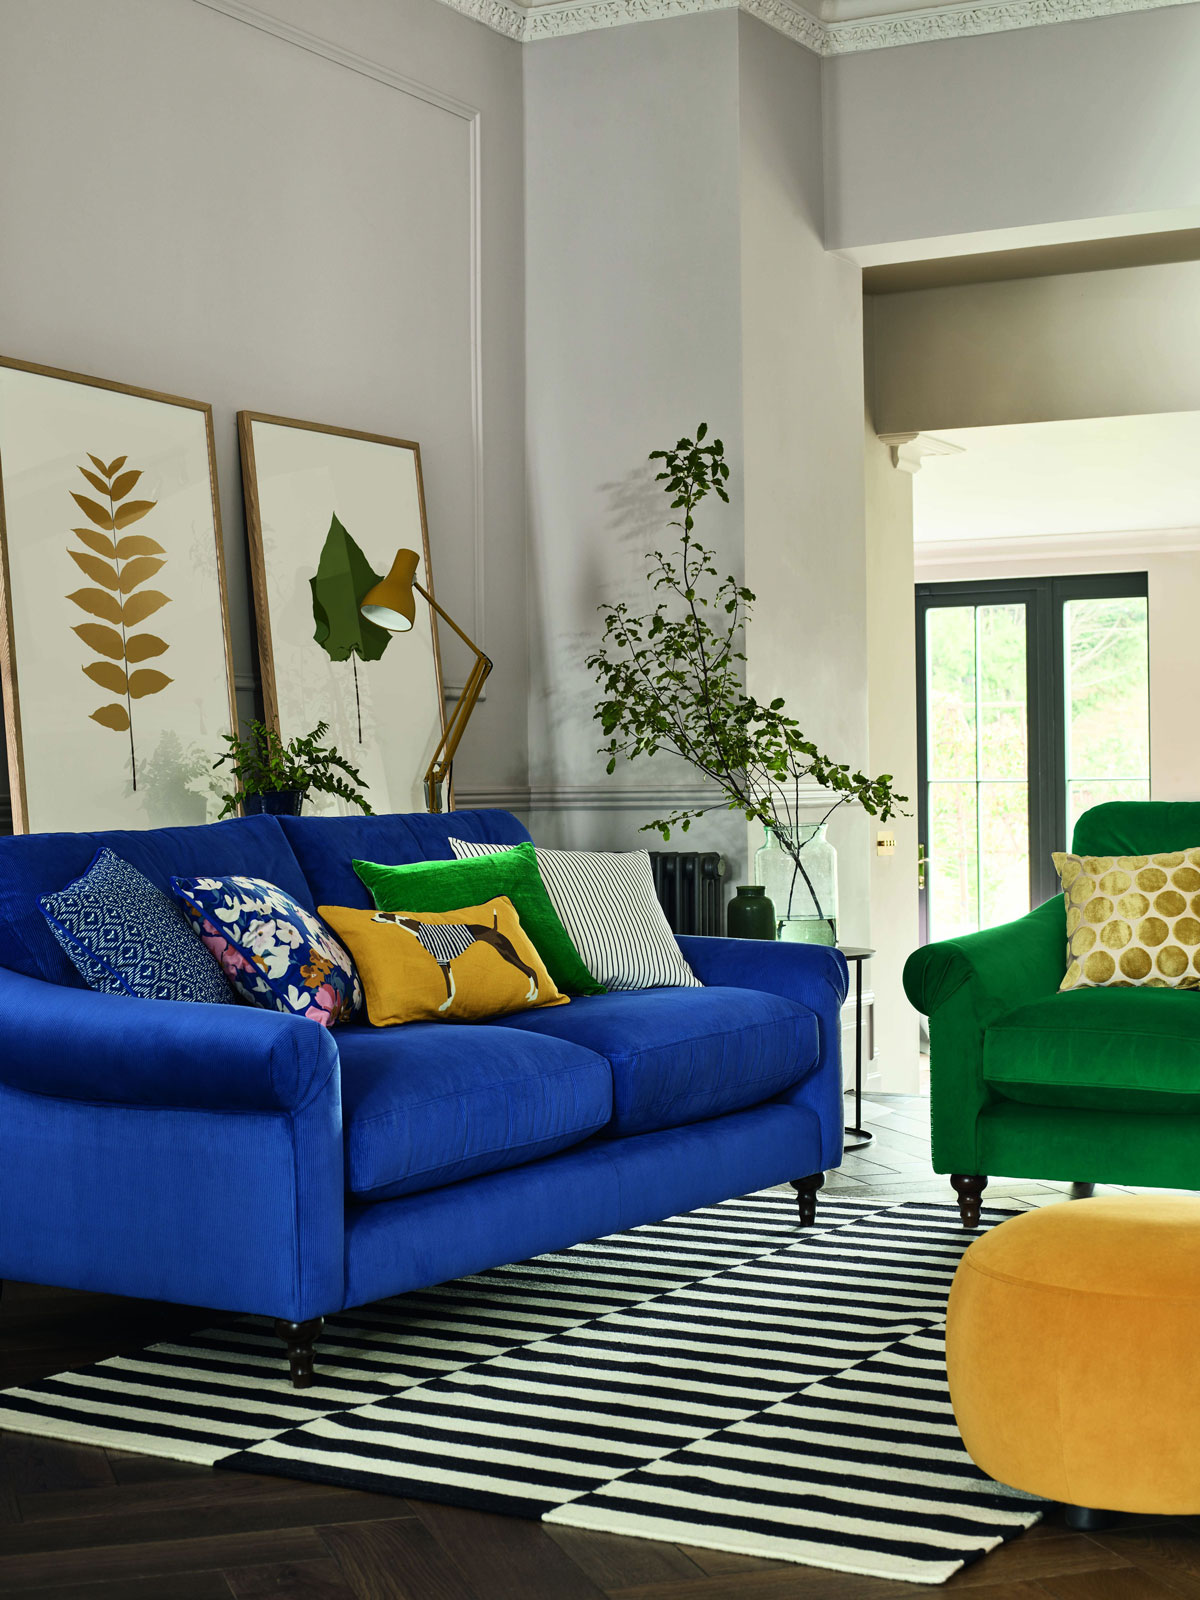 moderná obývačka s výraznou modrou sedačkou a výrazným zeleným kreslom a žltým taburetom, nábytok stojí na pásikavom čierno-bielom koberci